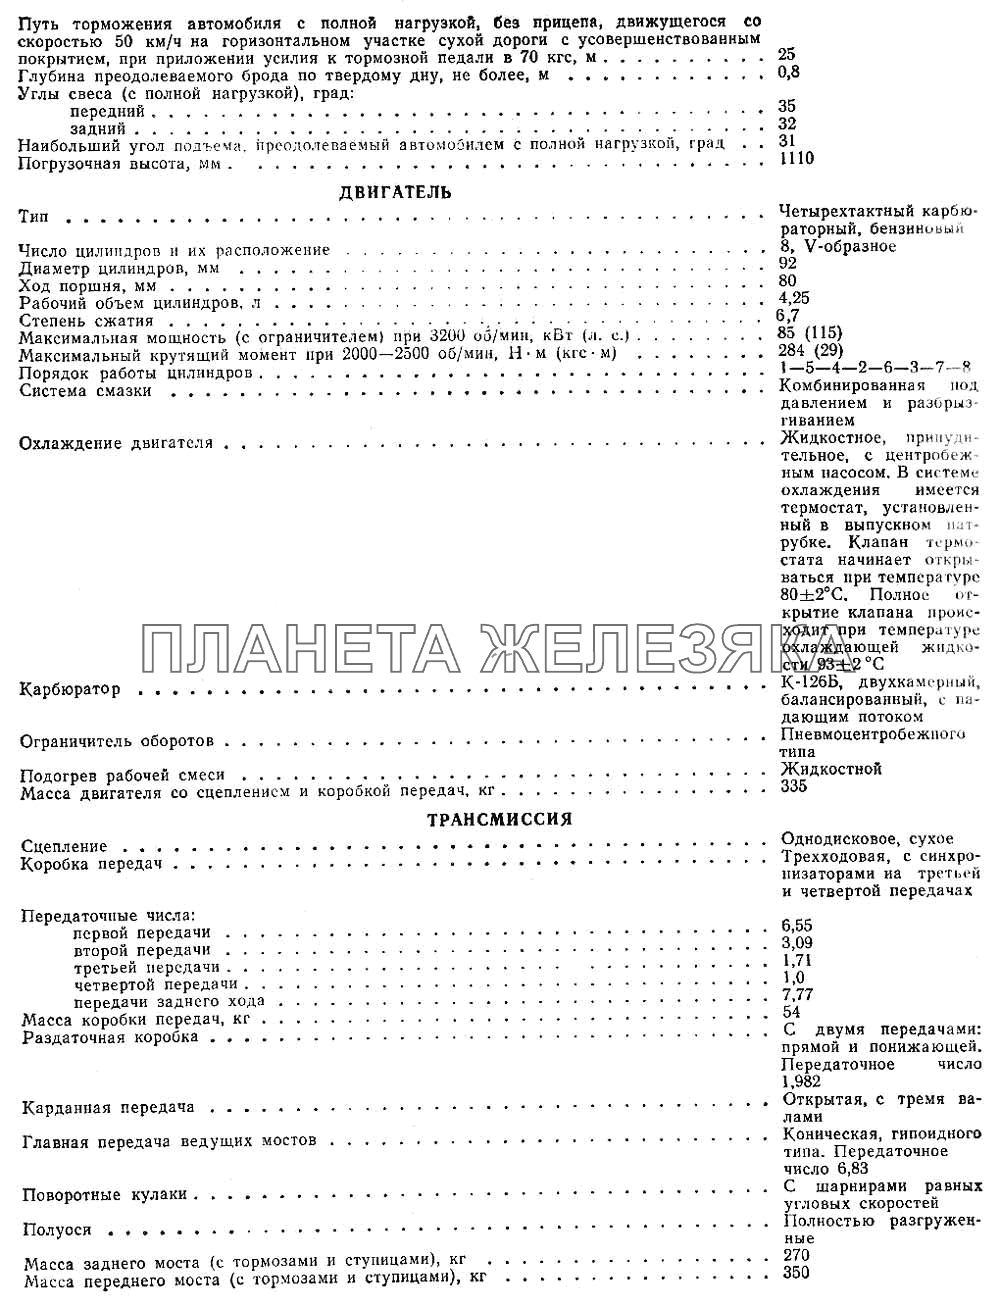 Лист 2 ГАЗ-66 (Каталог 1983 г.)